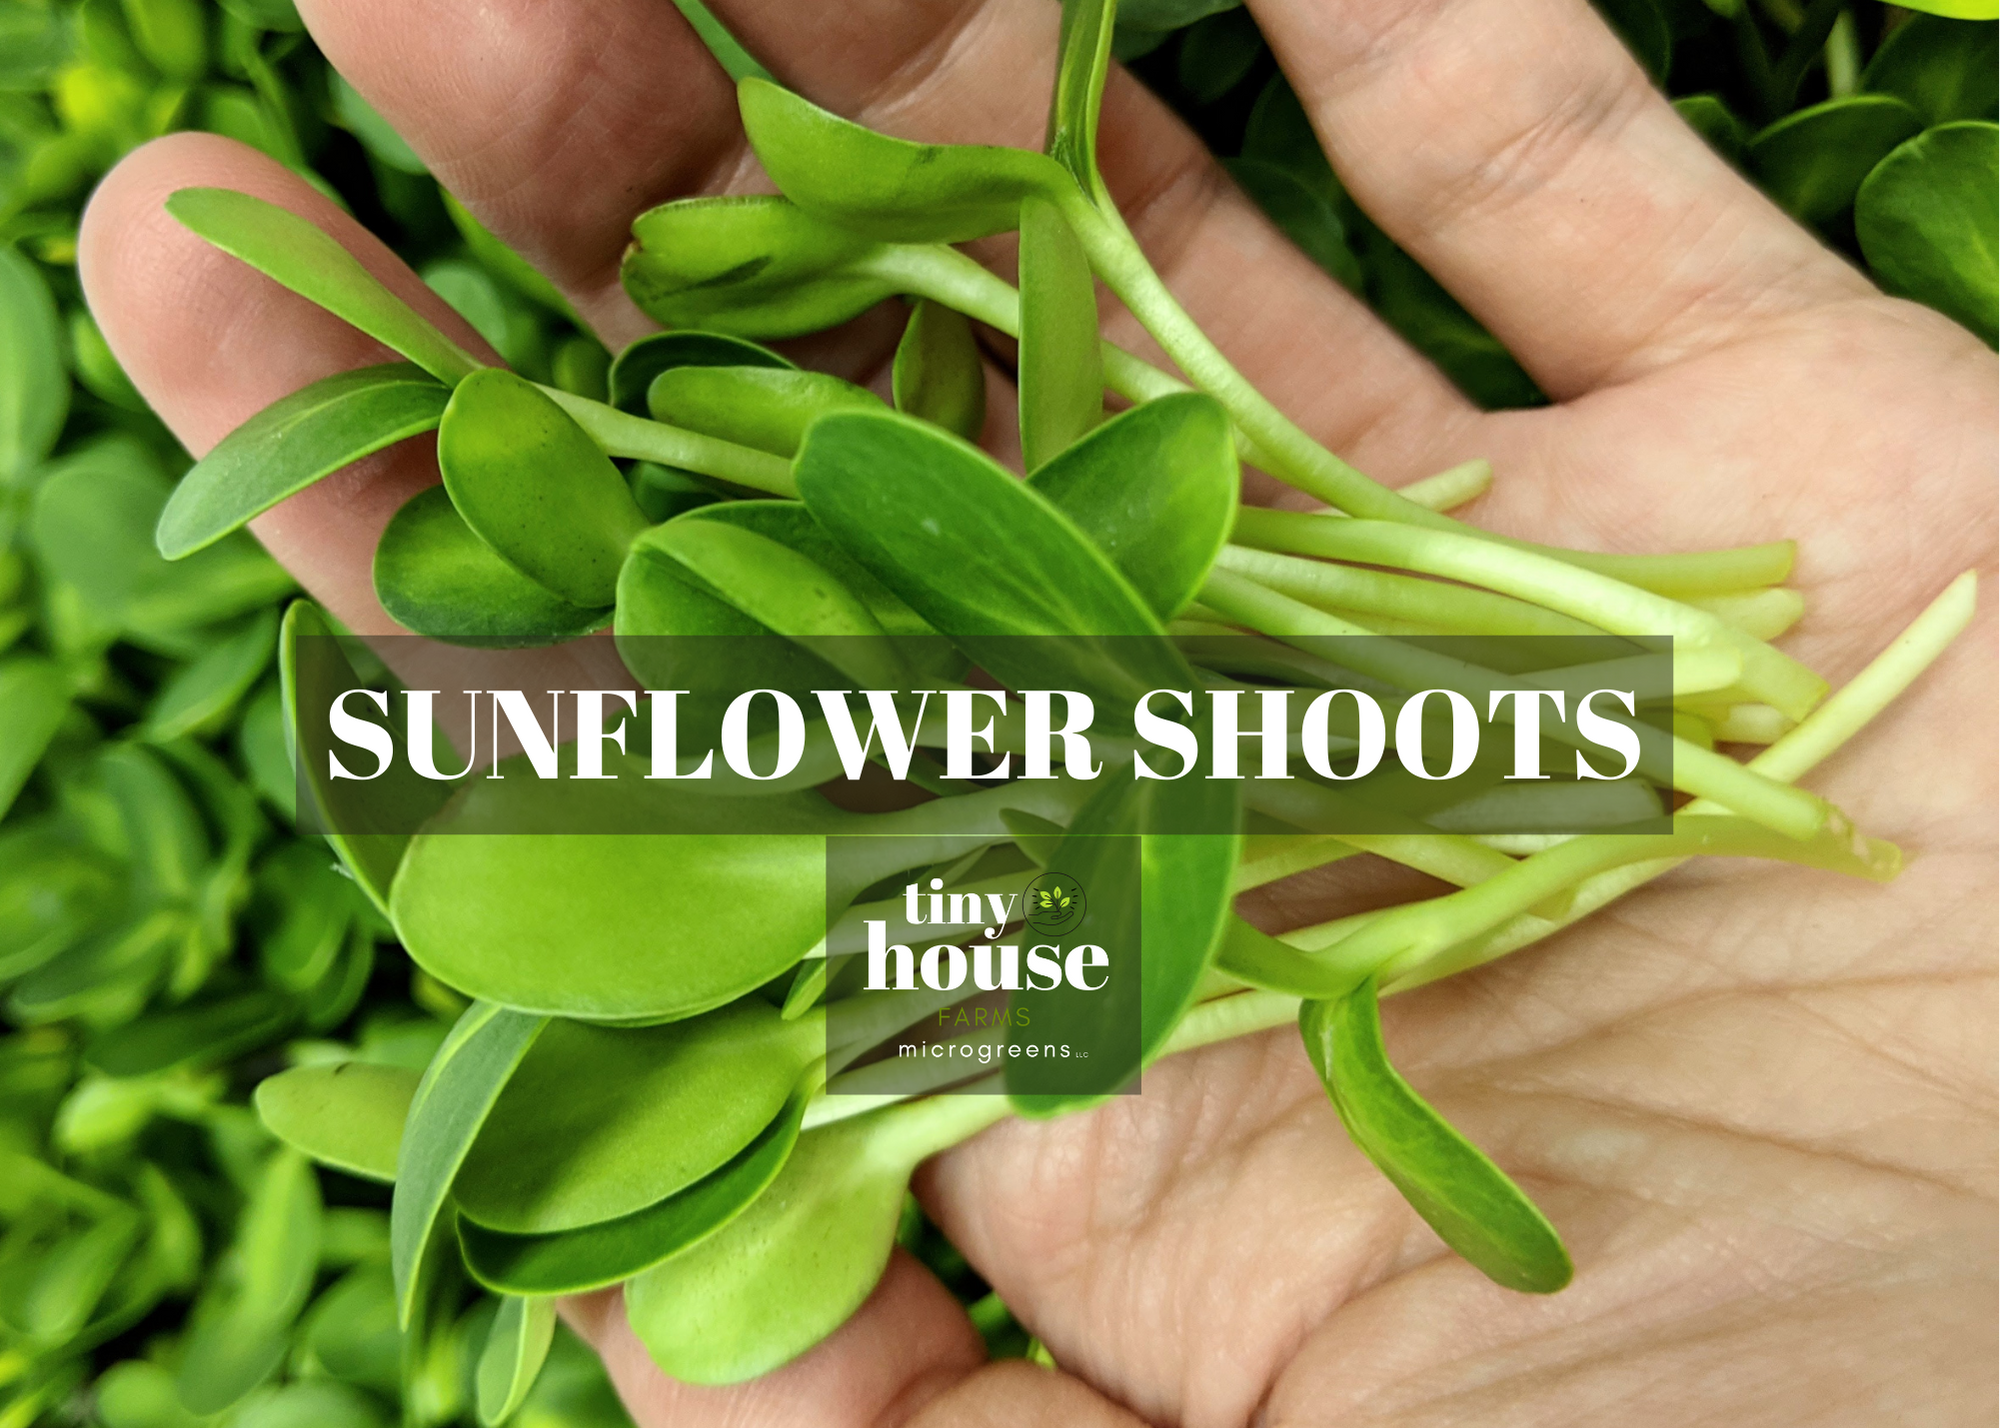 Sunflower Shoots